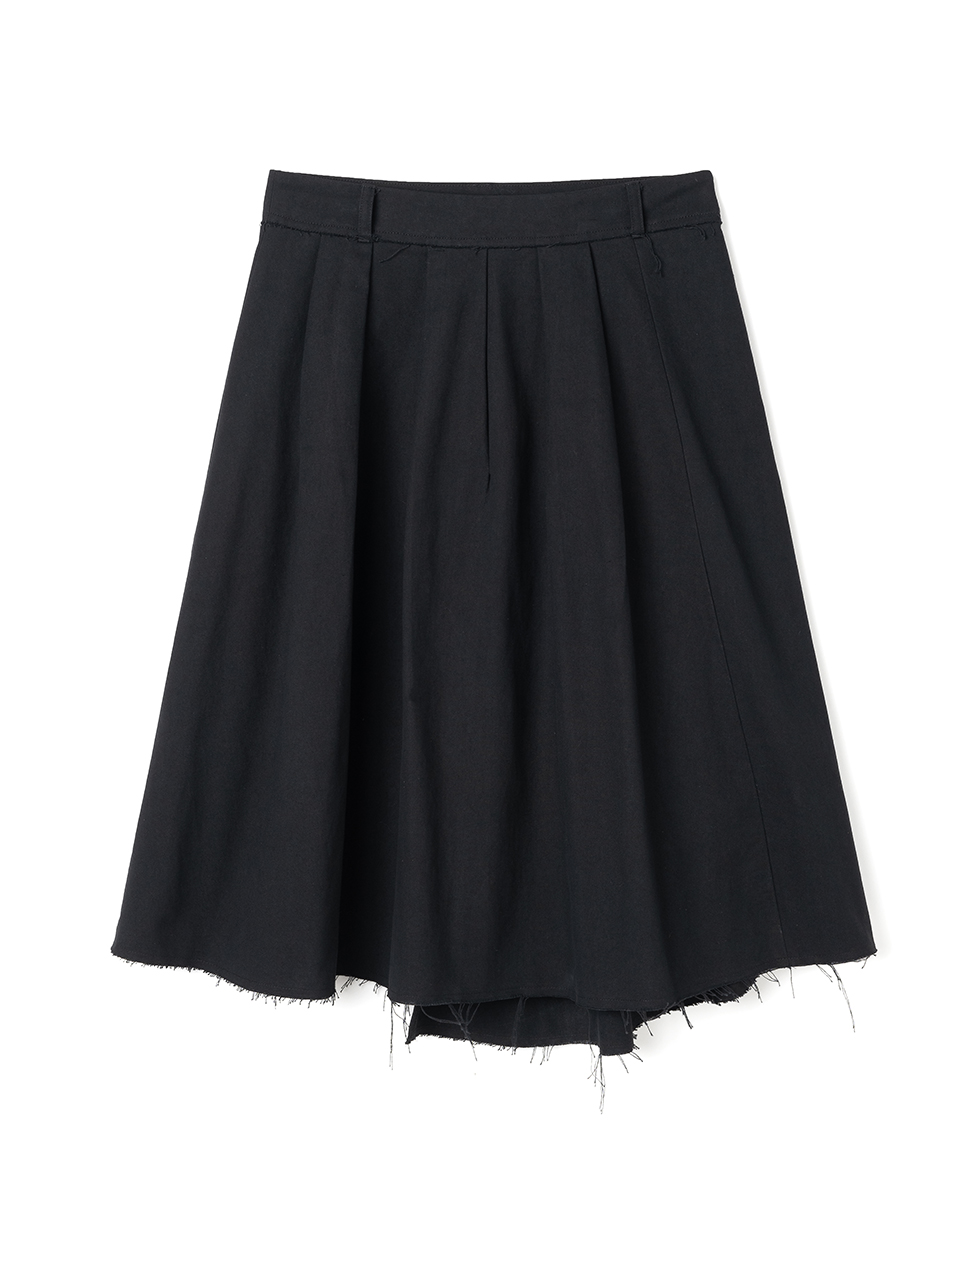 Cut-off Pleated Skirt [Black]